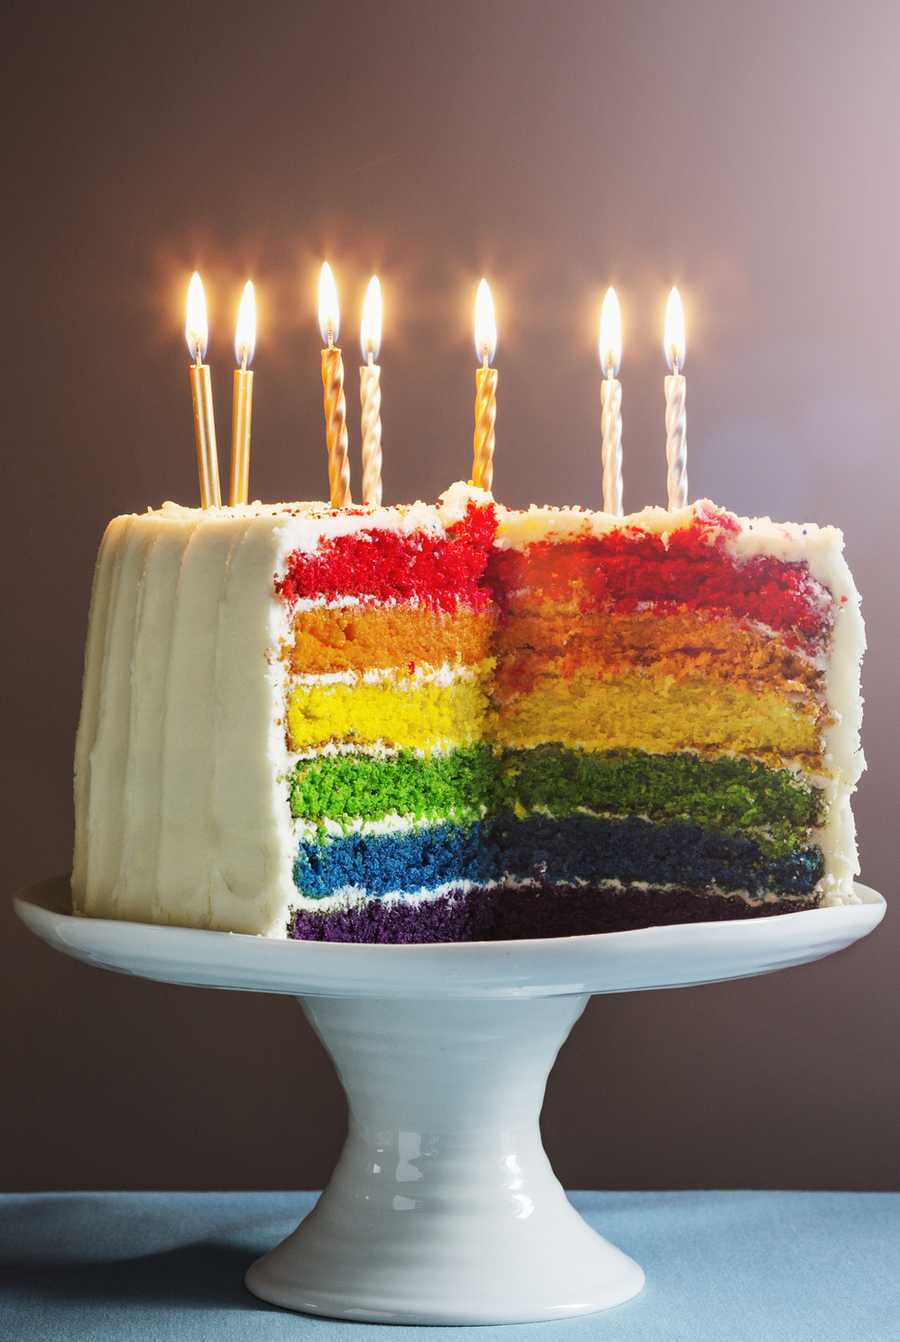 10 virtual birthday party ideas you can do while social ...